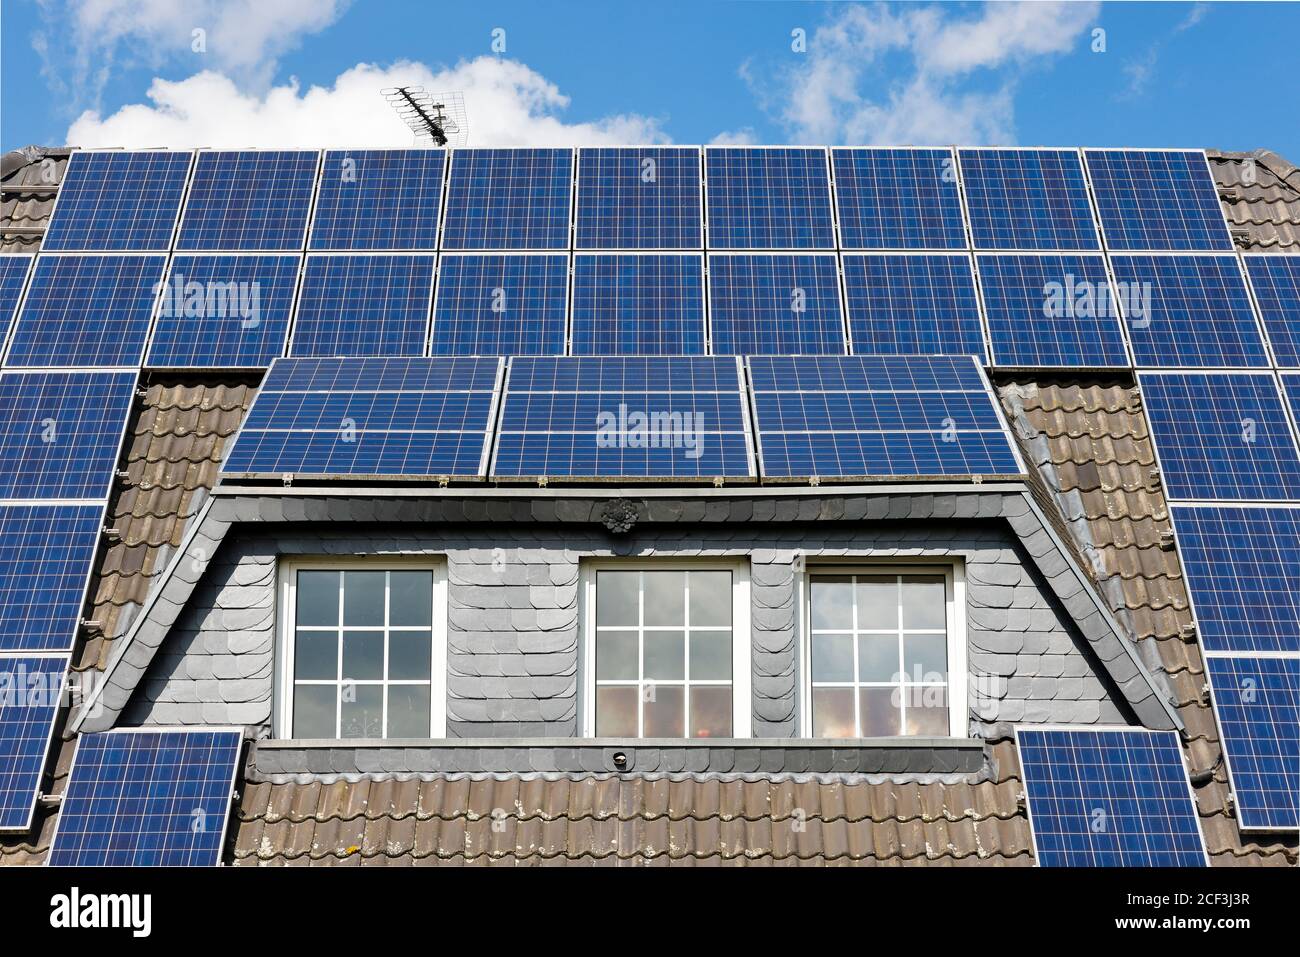 Willich, Nord Reno-Westfalia, Germania - energia solare, casa residenziale con celle solari fotovoltaiche sul tetto. Foto Stock